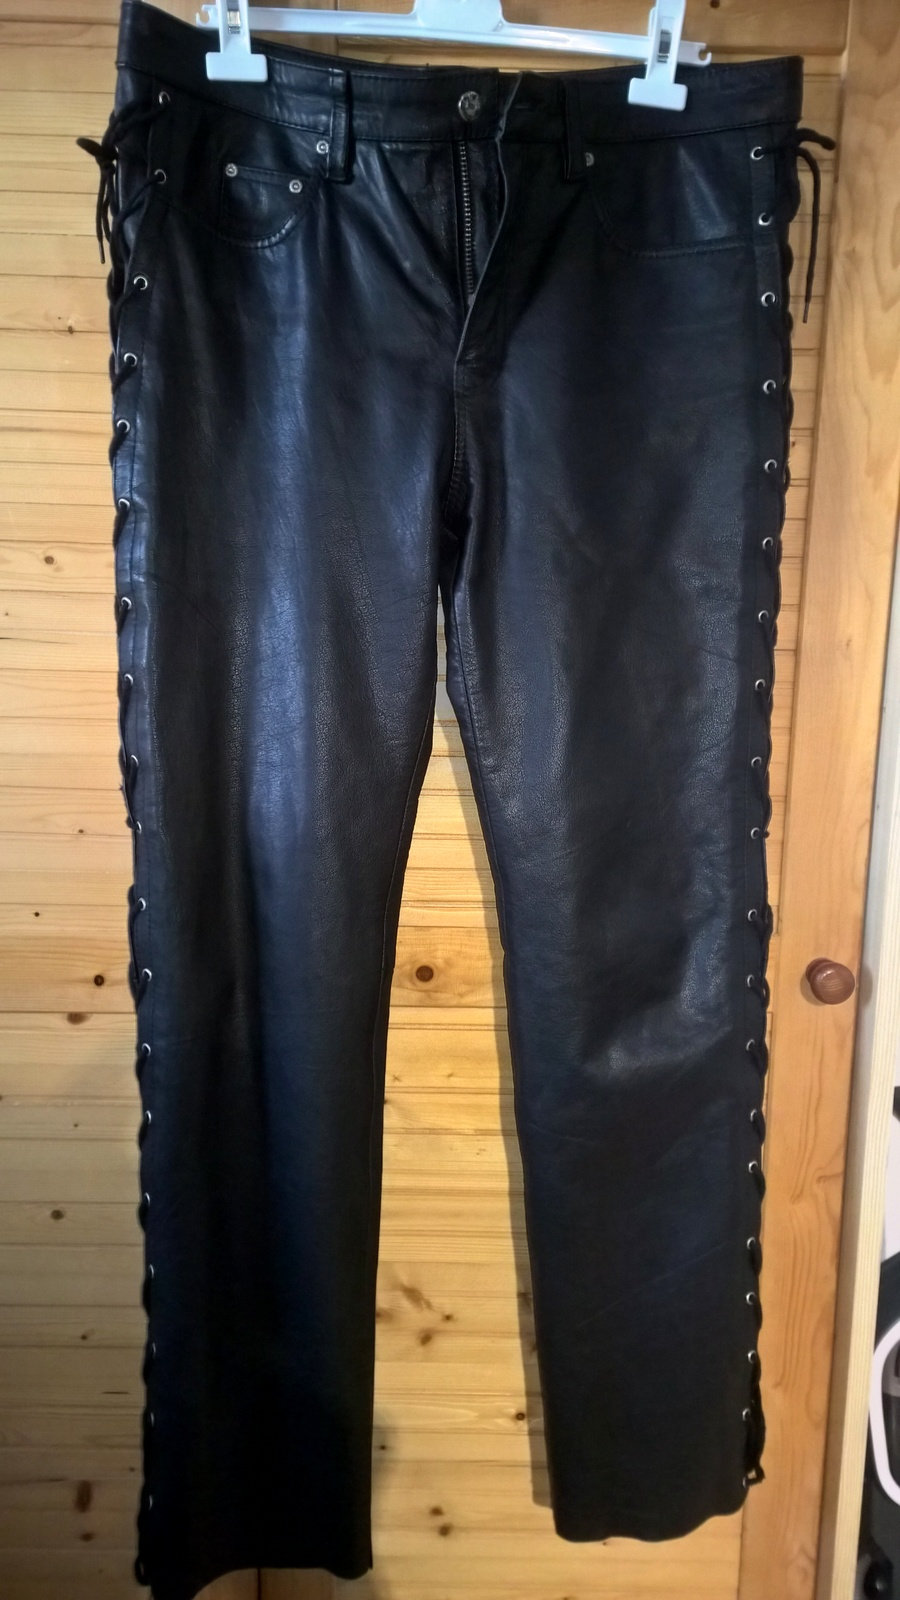 Pantalon cuir noir Kinh